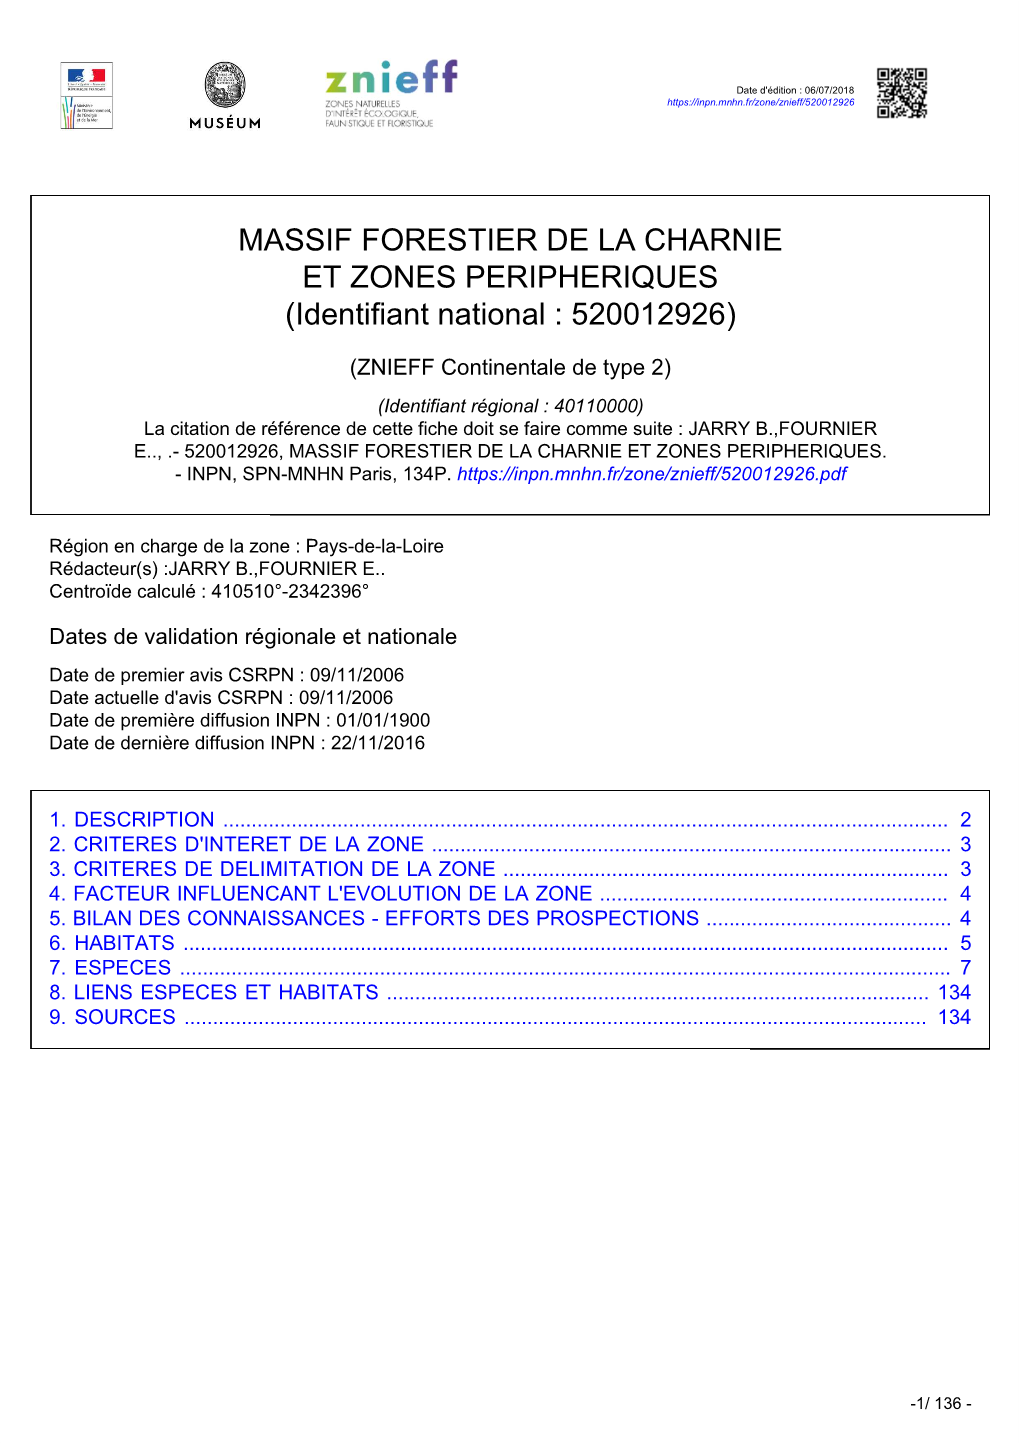 MASSIF FORESTIER DE LA CHARNIE ET ZONES PERIPHERIQUES (Identifiant National : 520012926)